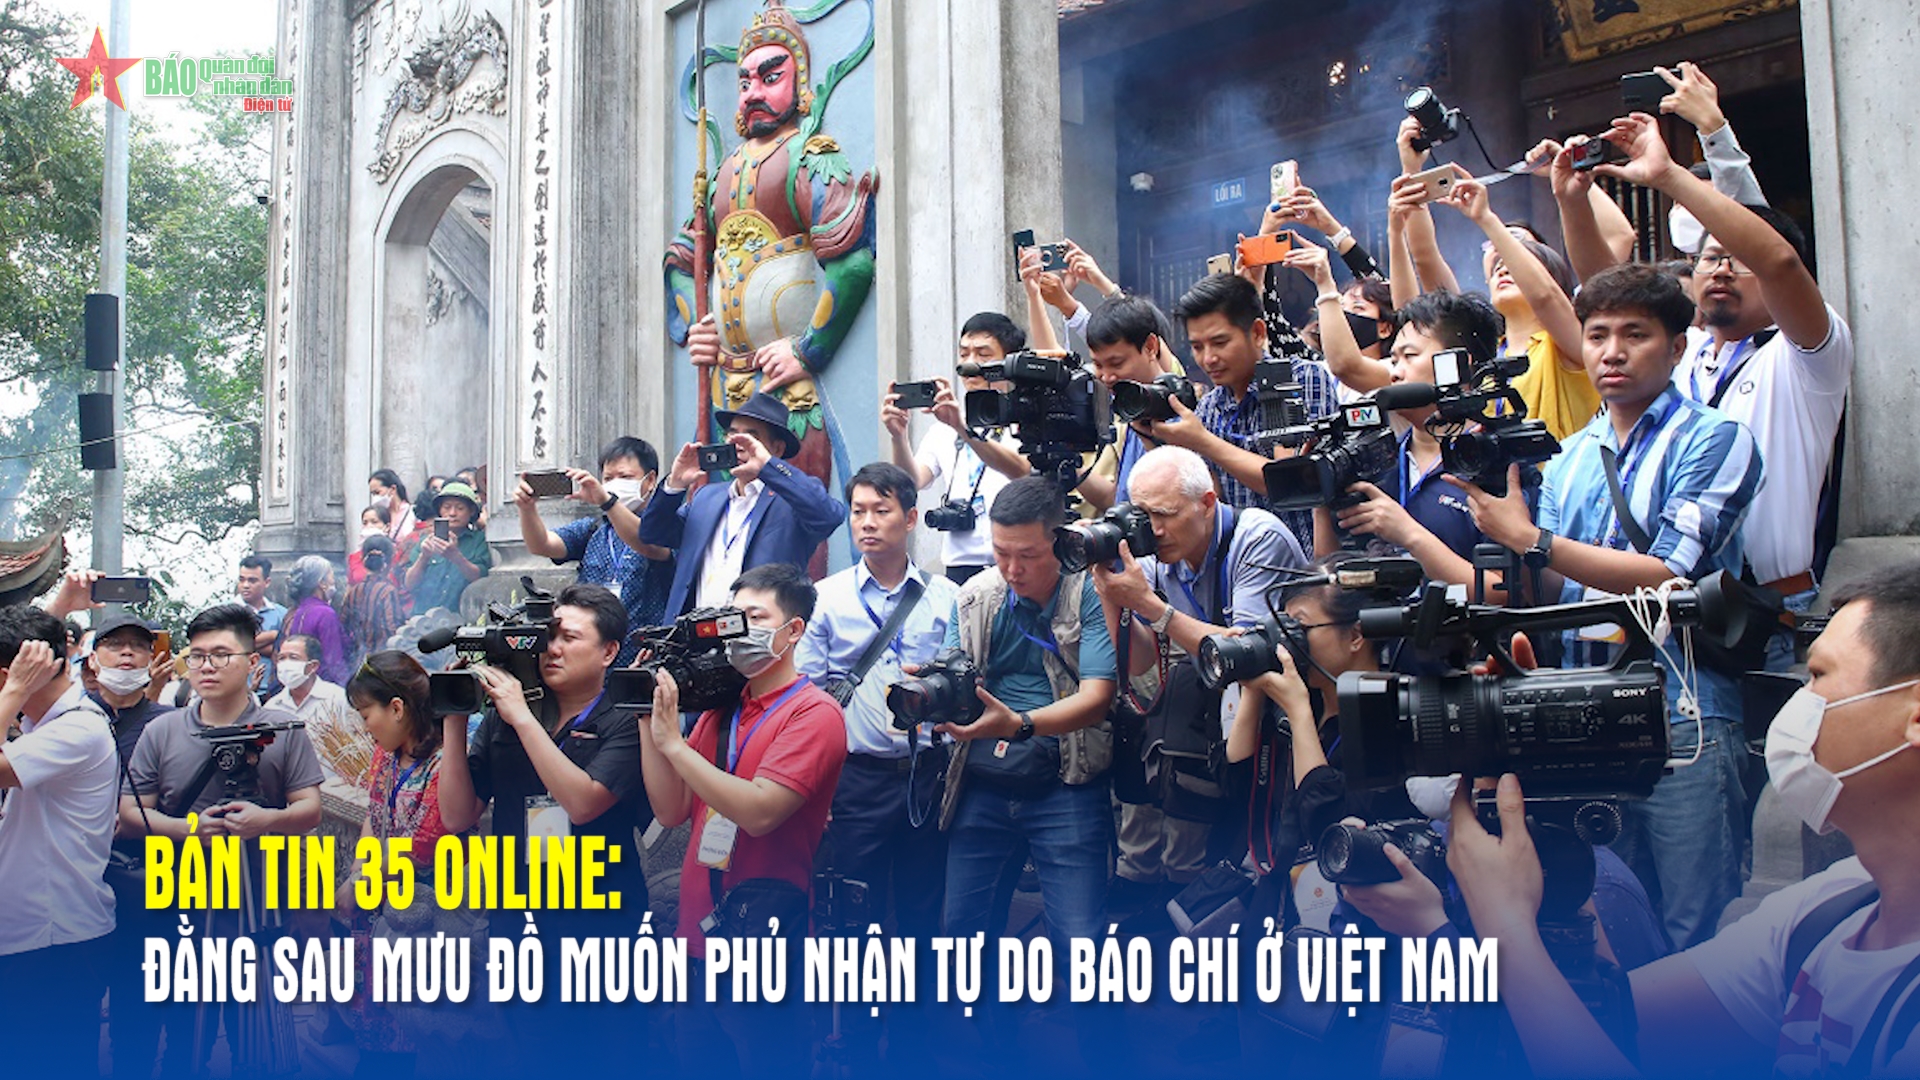 Bản tin 35 Online Đằng sau mưu đồ muốn phủ nhận tự do báo chí ở Việt Nam